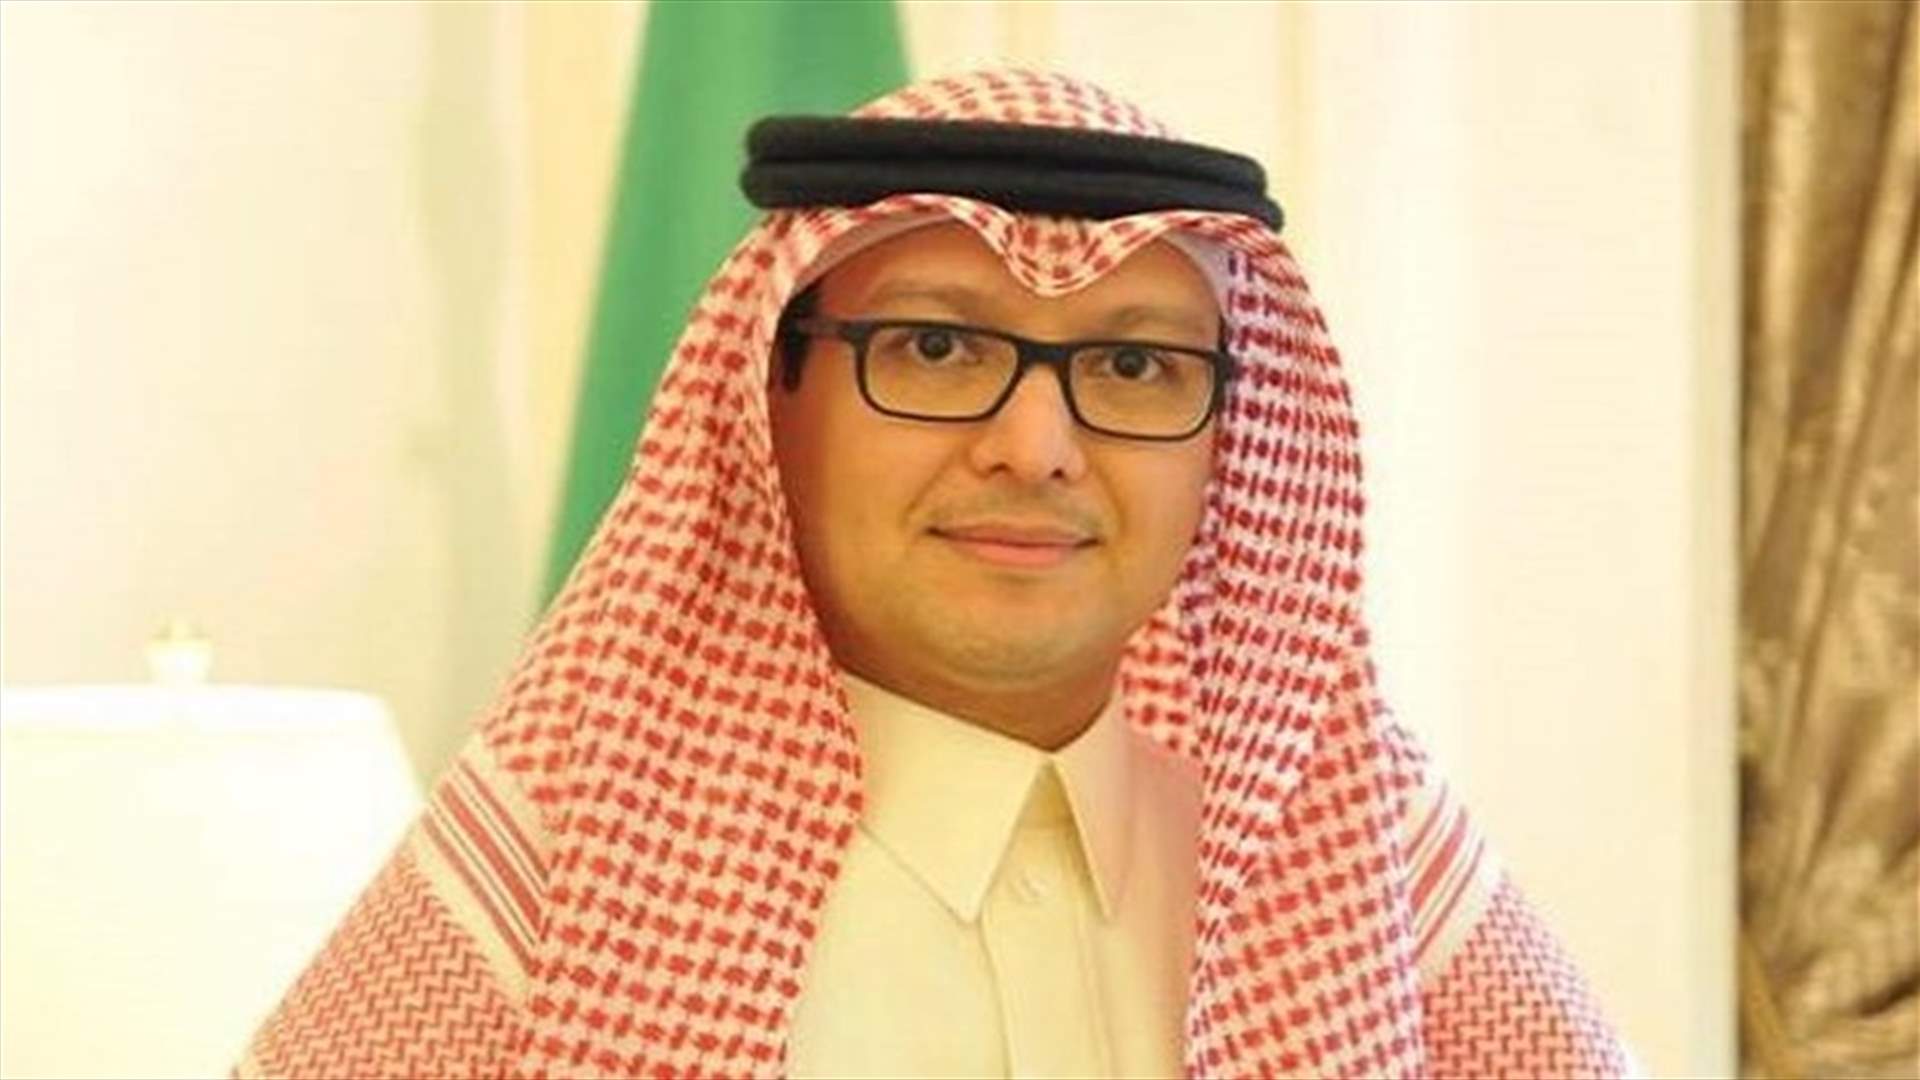 السفير السعودي يعلن بشرى للقادمين المقيمين في المملكة للذين تلقوا جرعتي لقاح كورونا